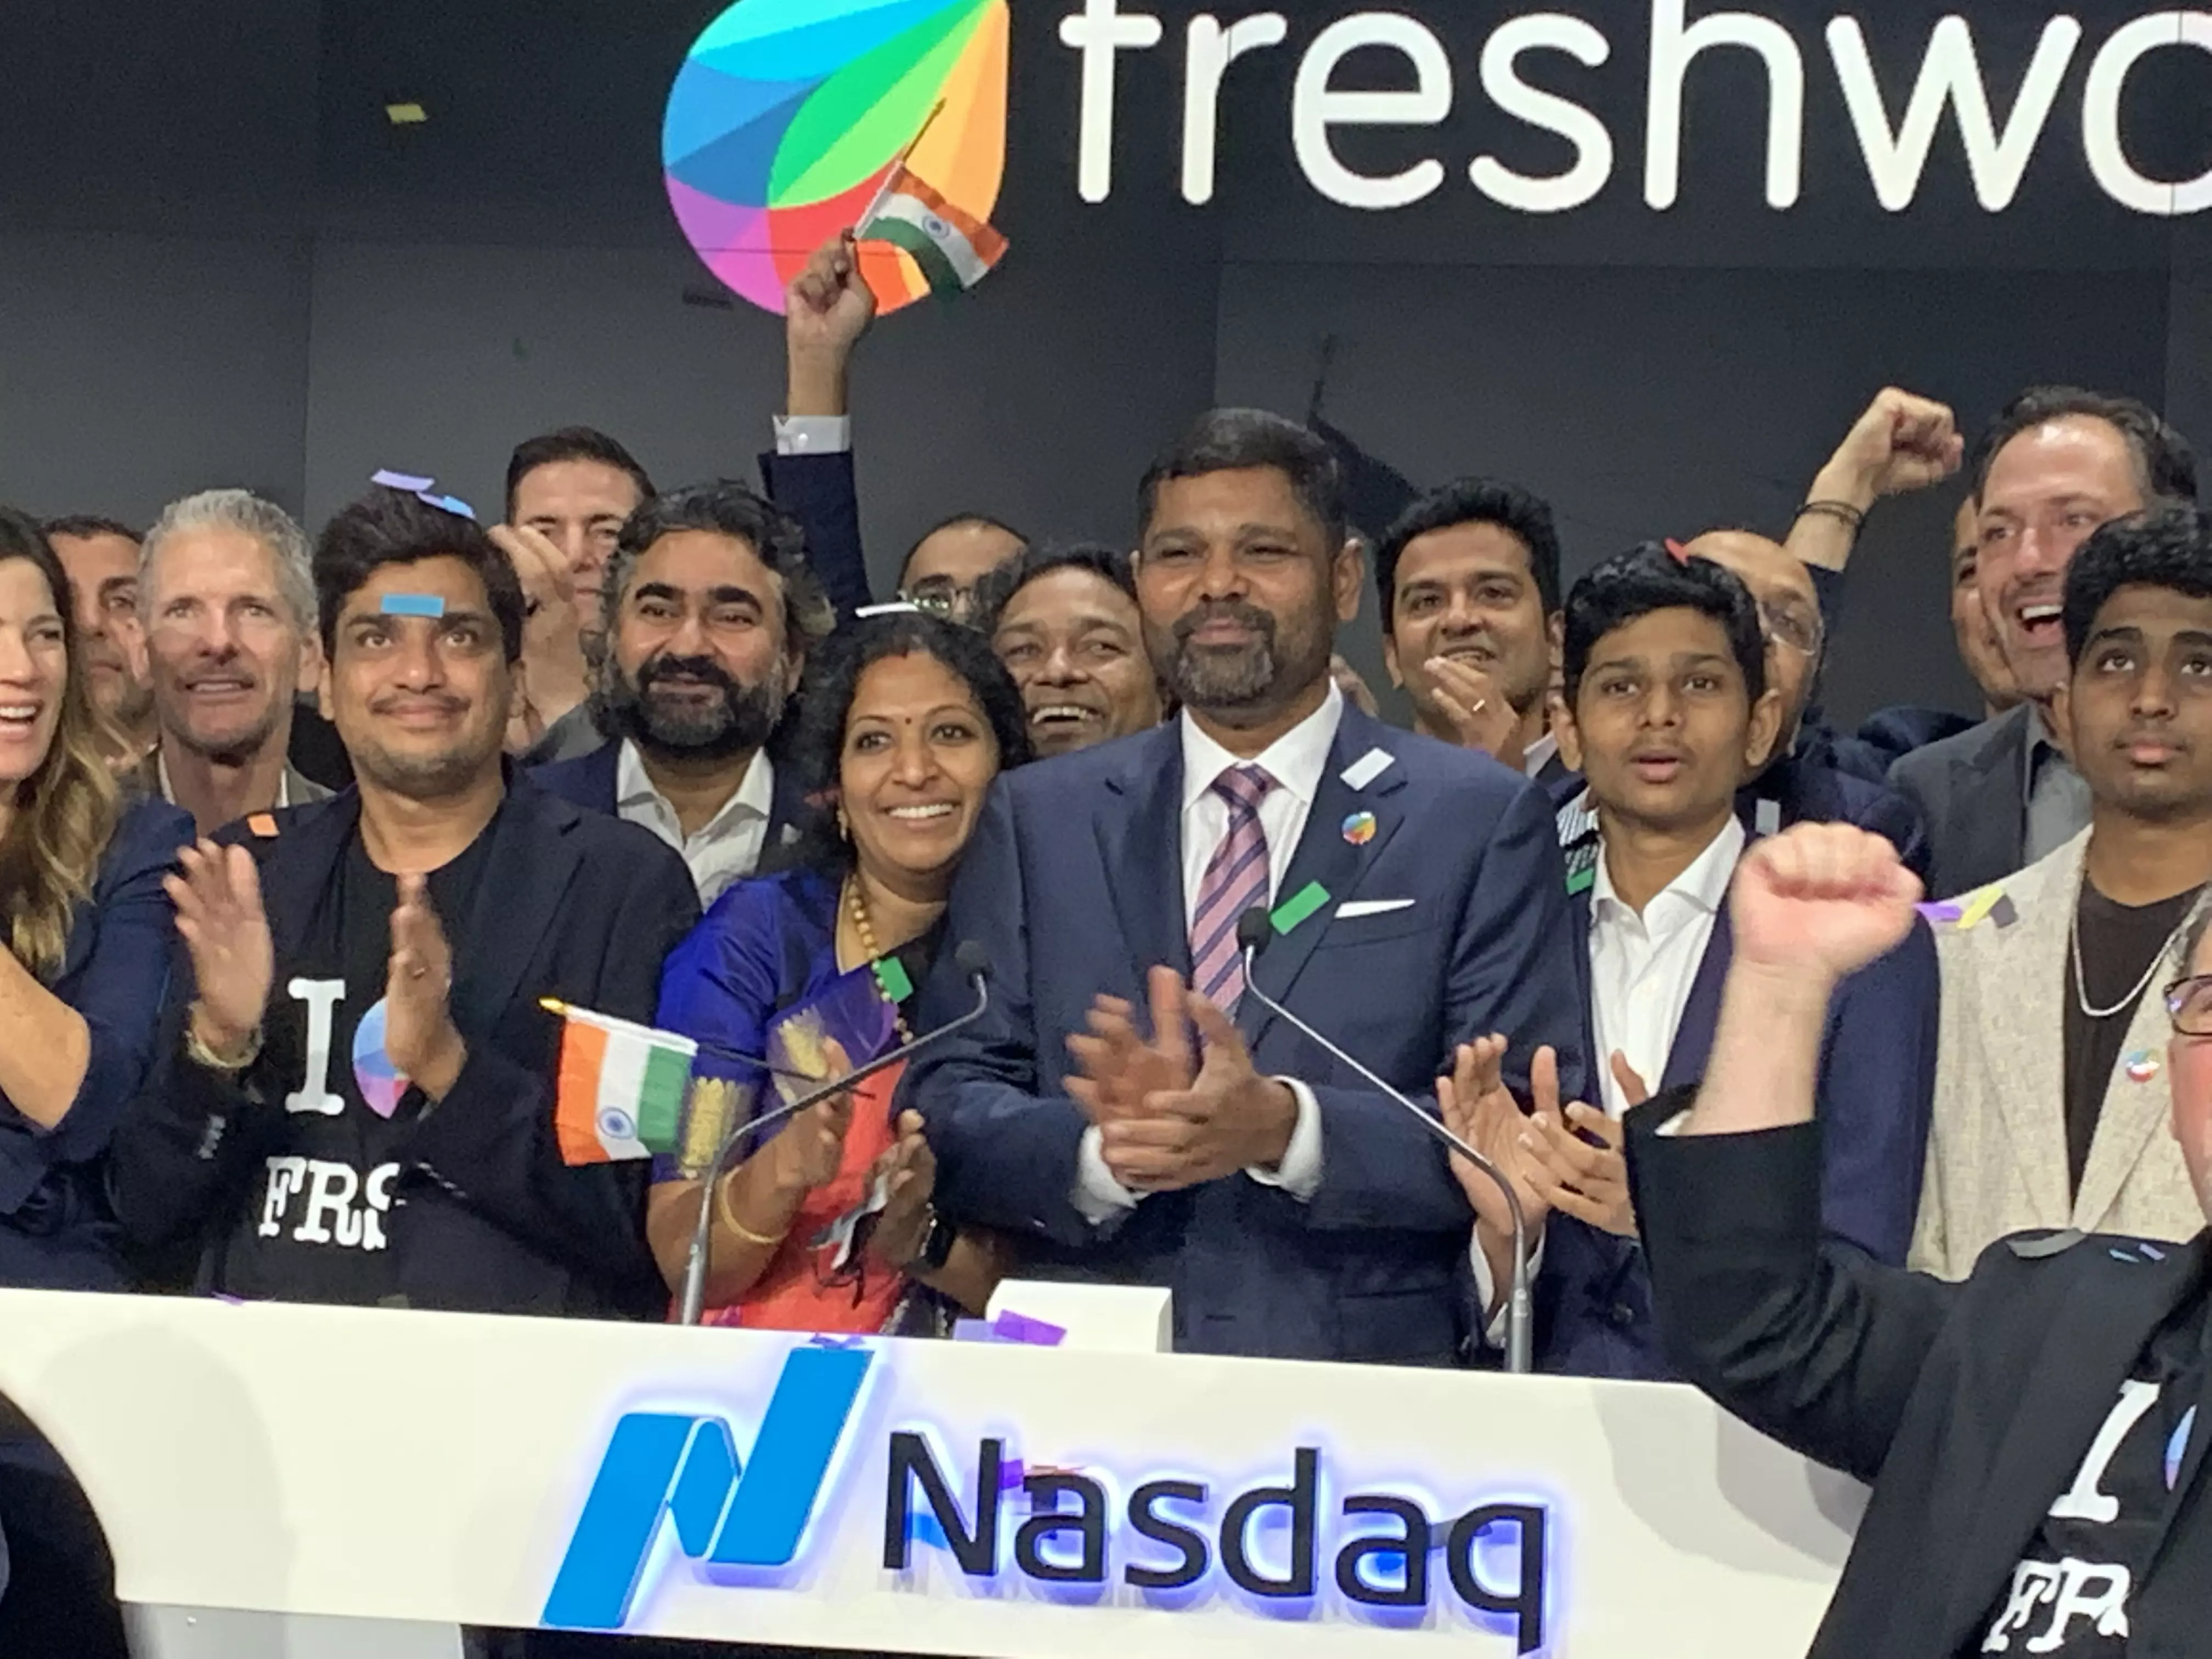 Freshworks founder Girish Mathrubootham steps down as CEO